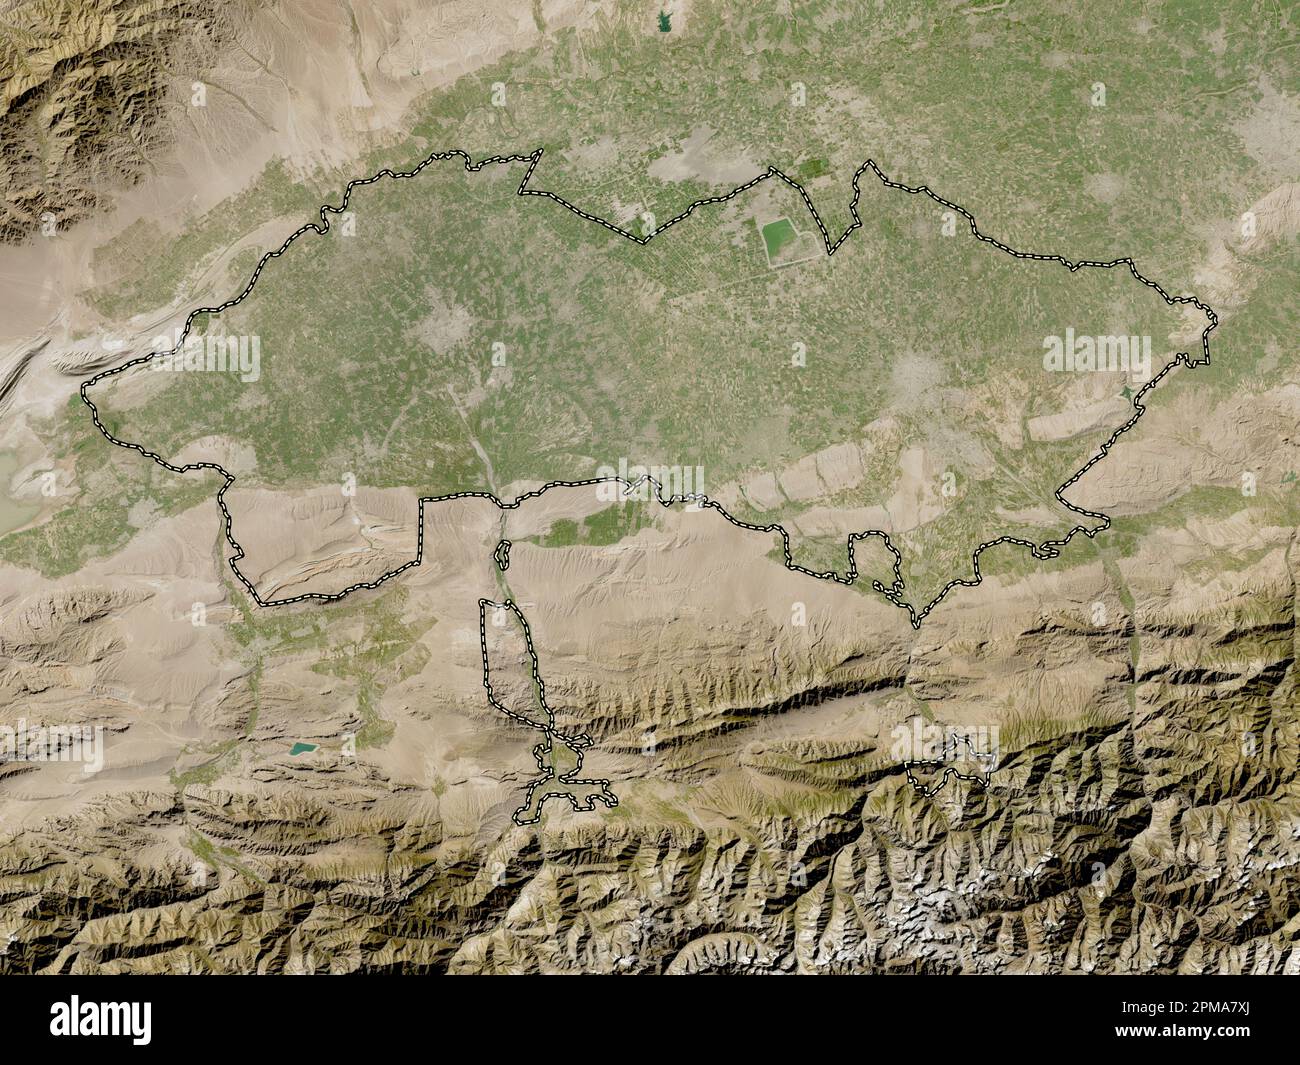 Ferghana, regione dell'Uzbekistan. Mappa satellitare a bassa risoluzione Foto Stock